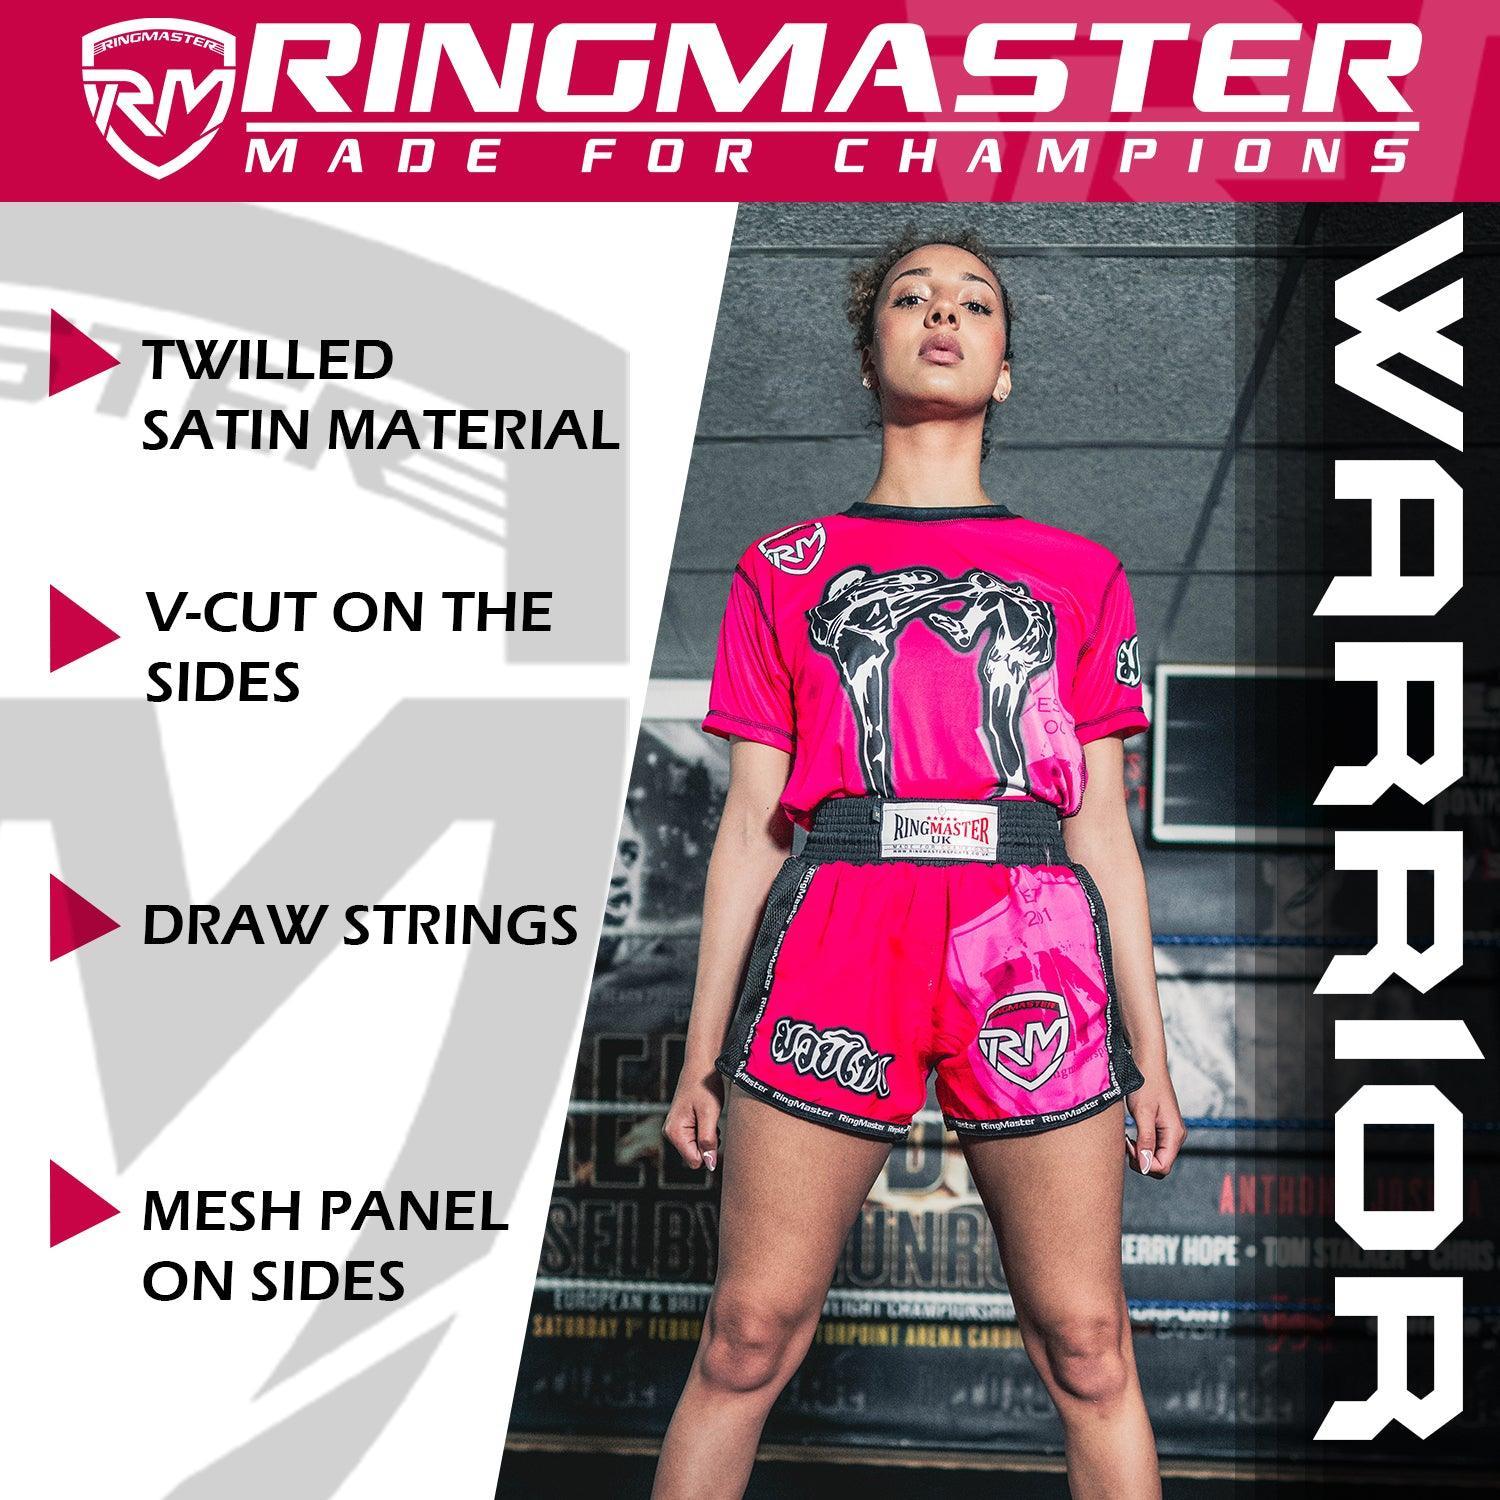 RingMaster Sports Warrior Thai / Kickboxing Shorts Pink - RingMaster Sports